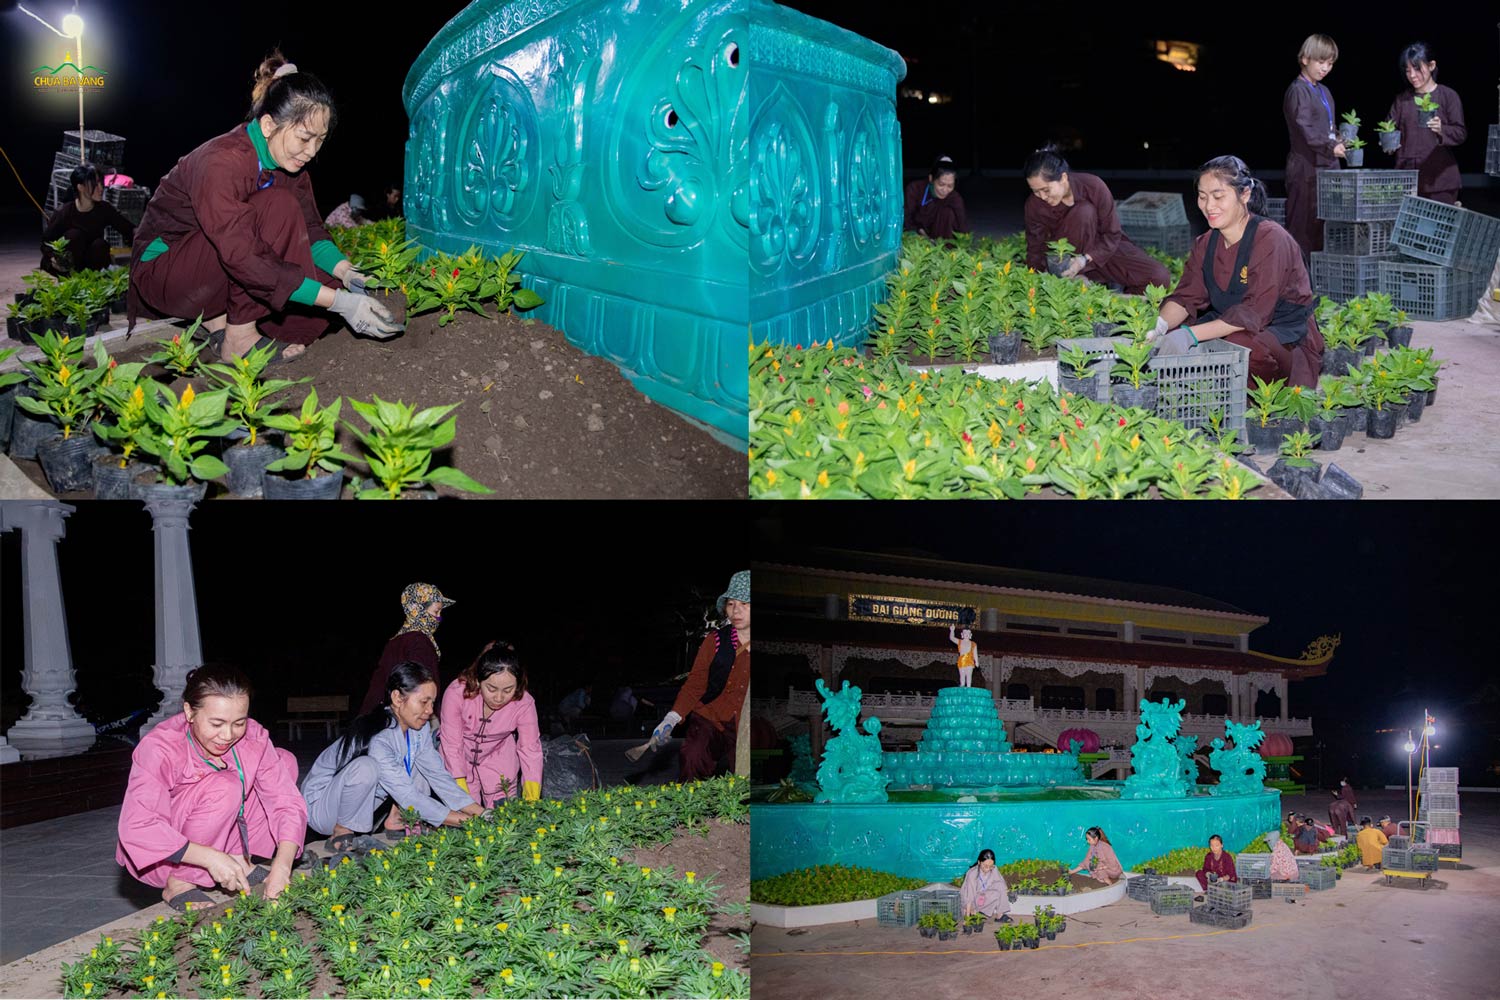 Dù đã tối muộn, các Phật tử vẫn hoan hỷ trồng cây hoa, để trang trí cảnh quan tại sân Phật Đản sinh